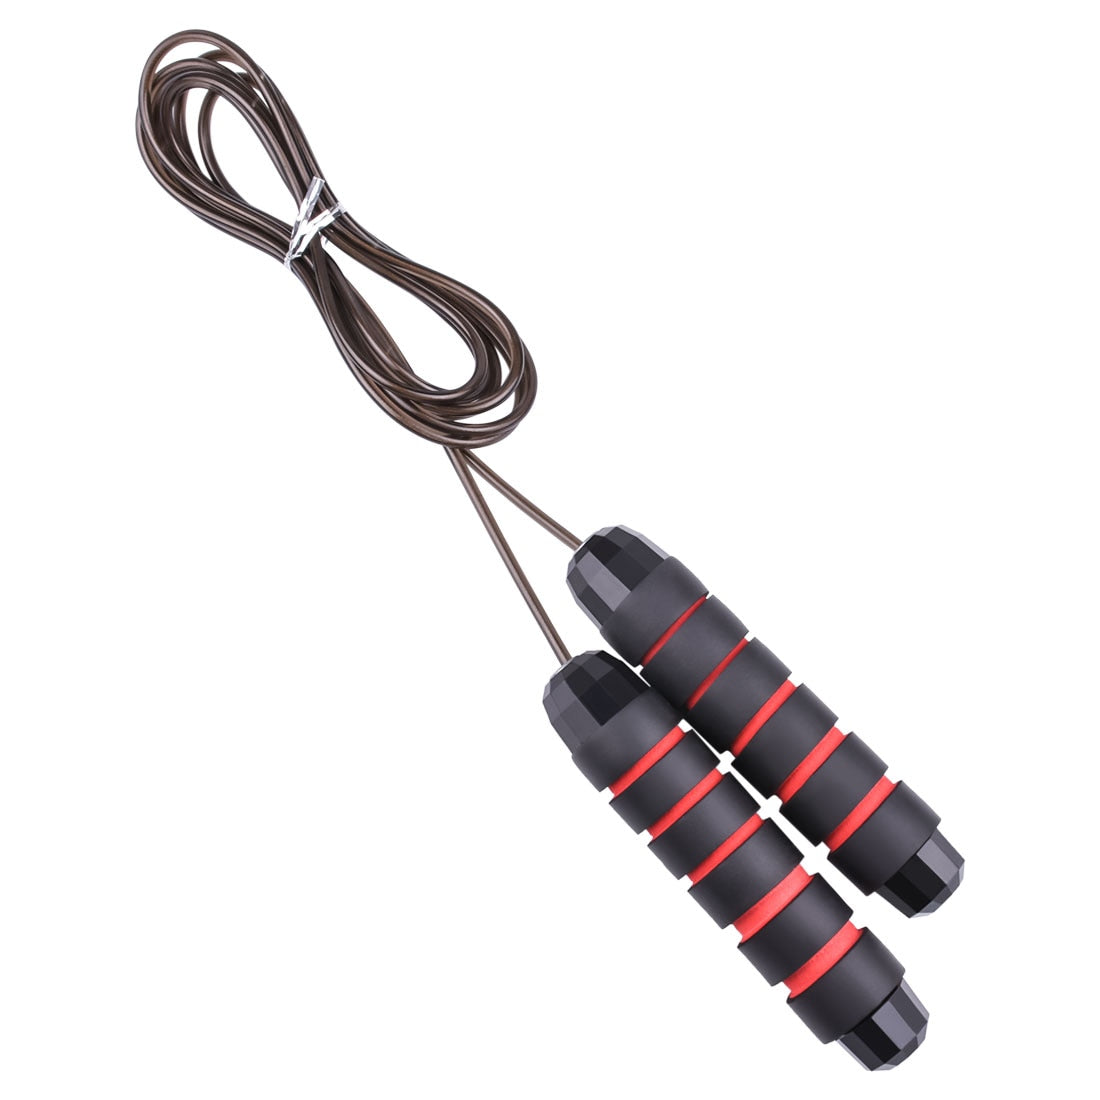 Cuerda para saltar con cable de velocidad rápida sin enredos y rodamientos de bolas